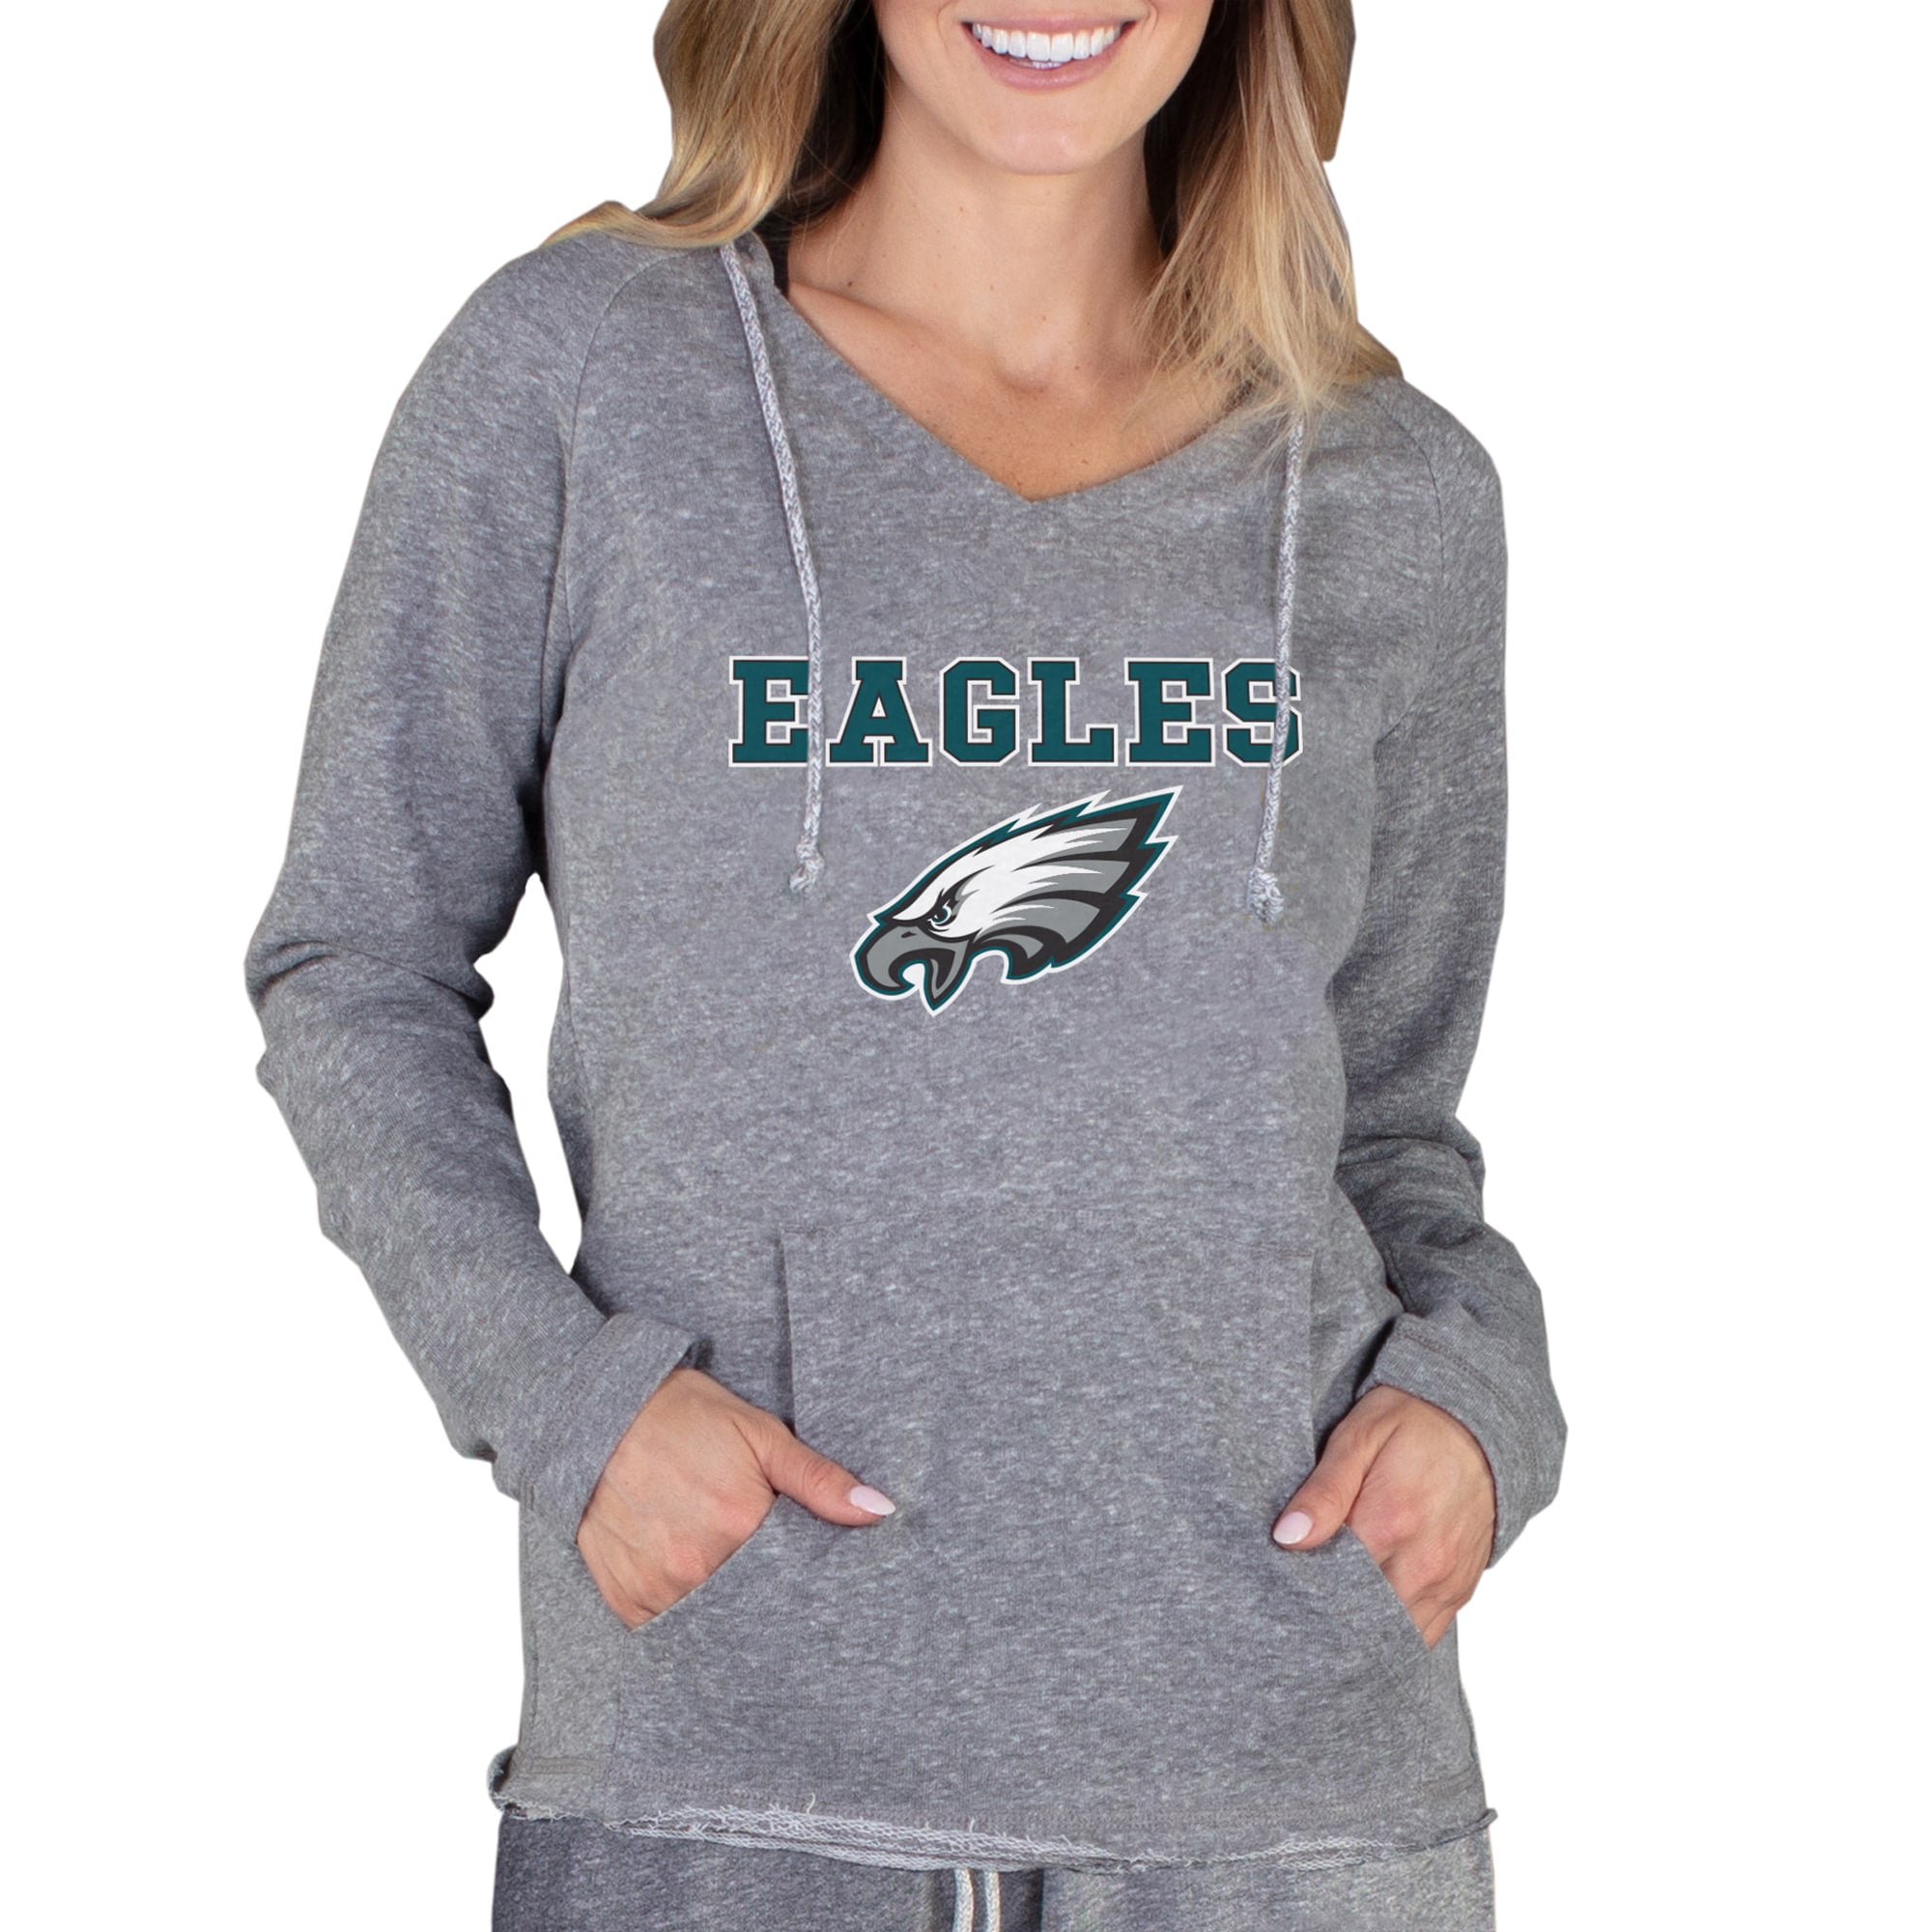 eagles sweatshirt for women